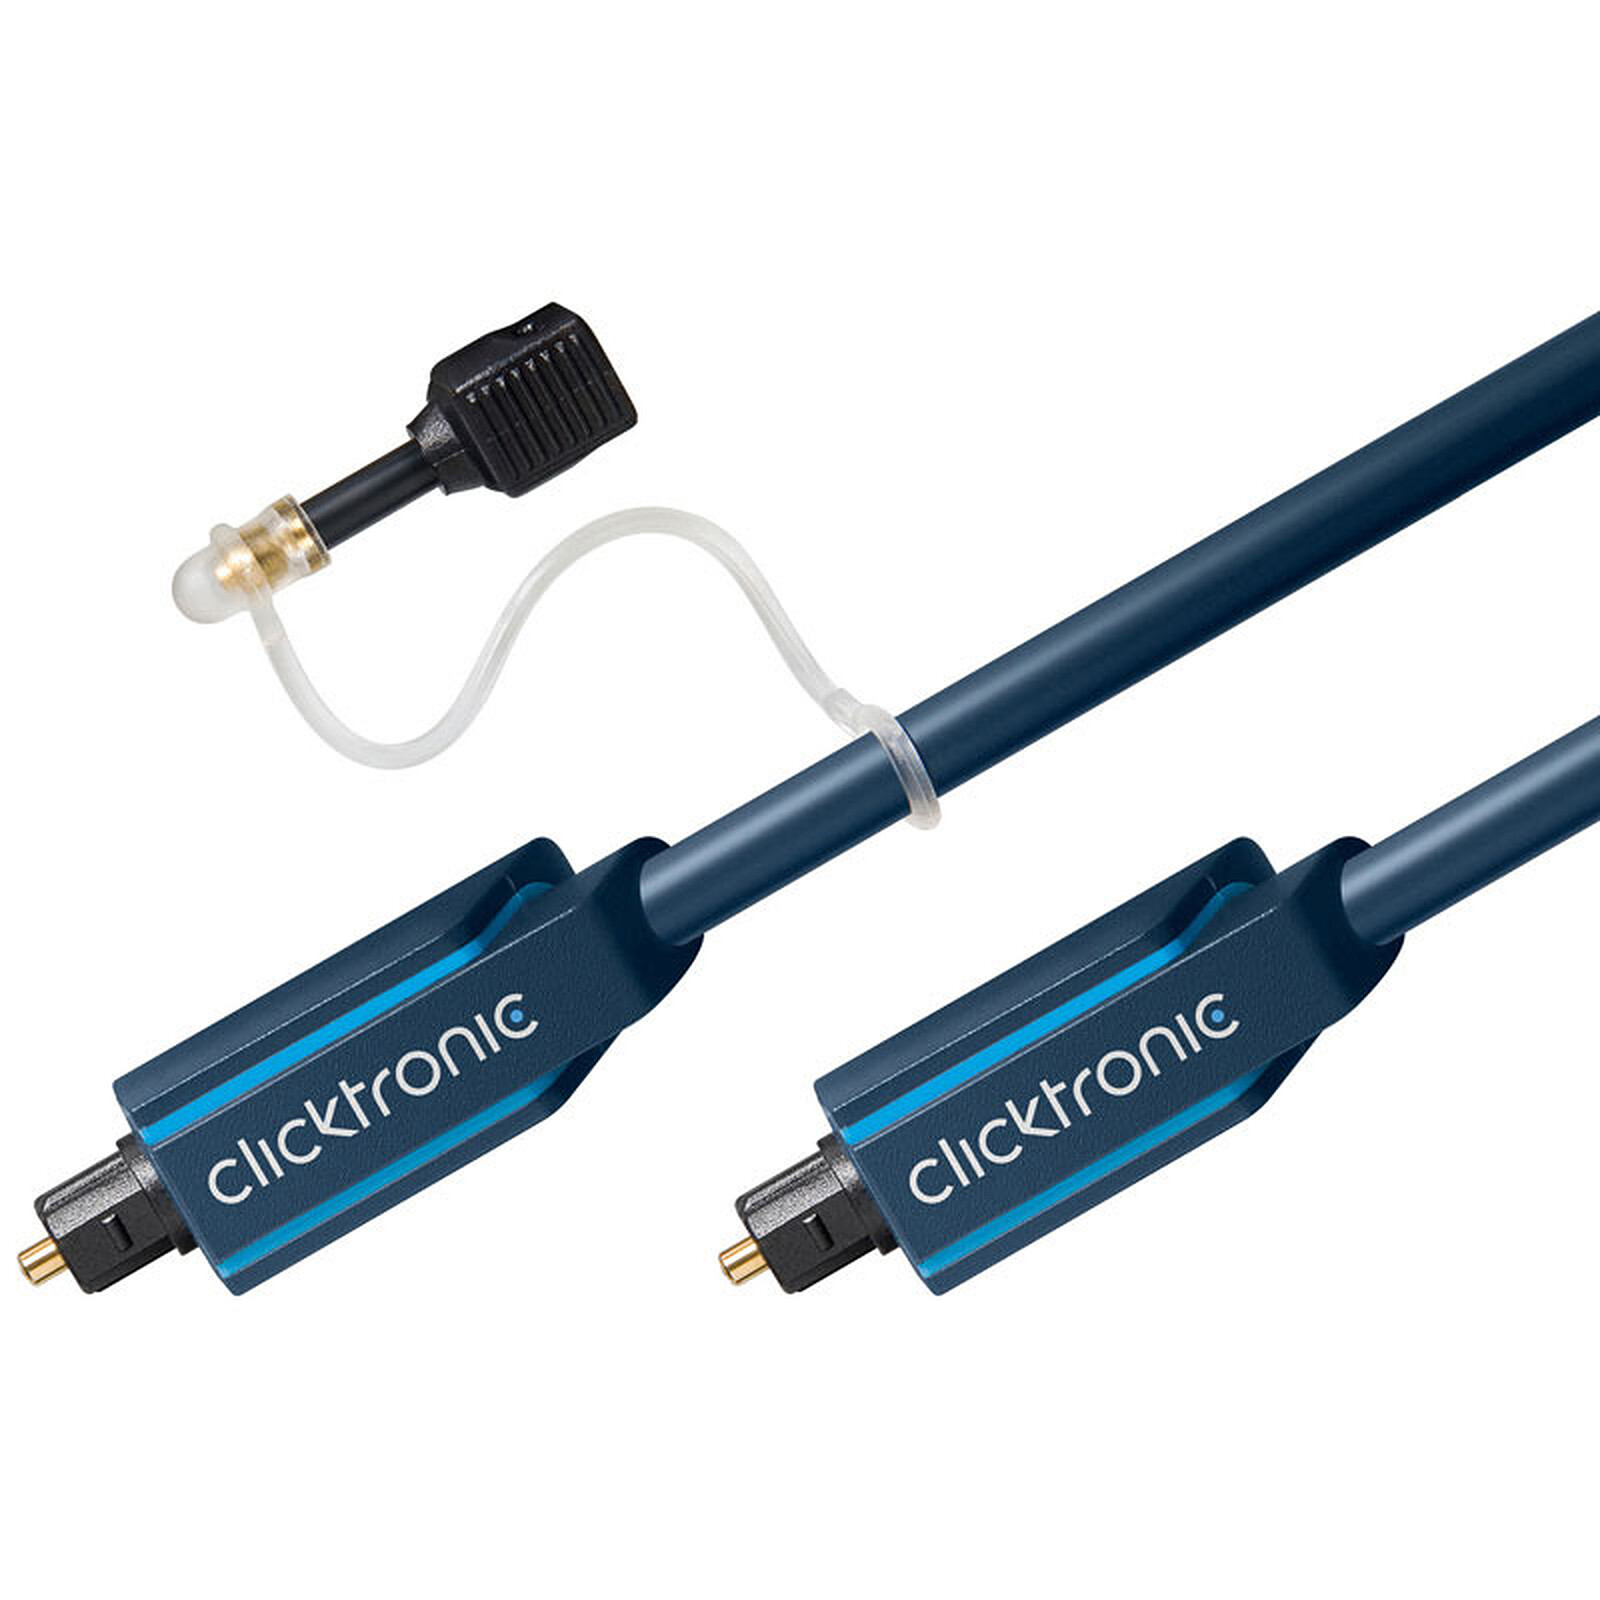 Nedis Câble Audio Optique - 2m - Câble audio numérique - Garantie 3 ans LDLC